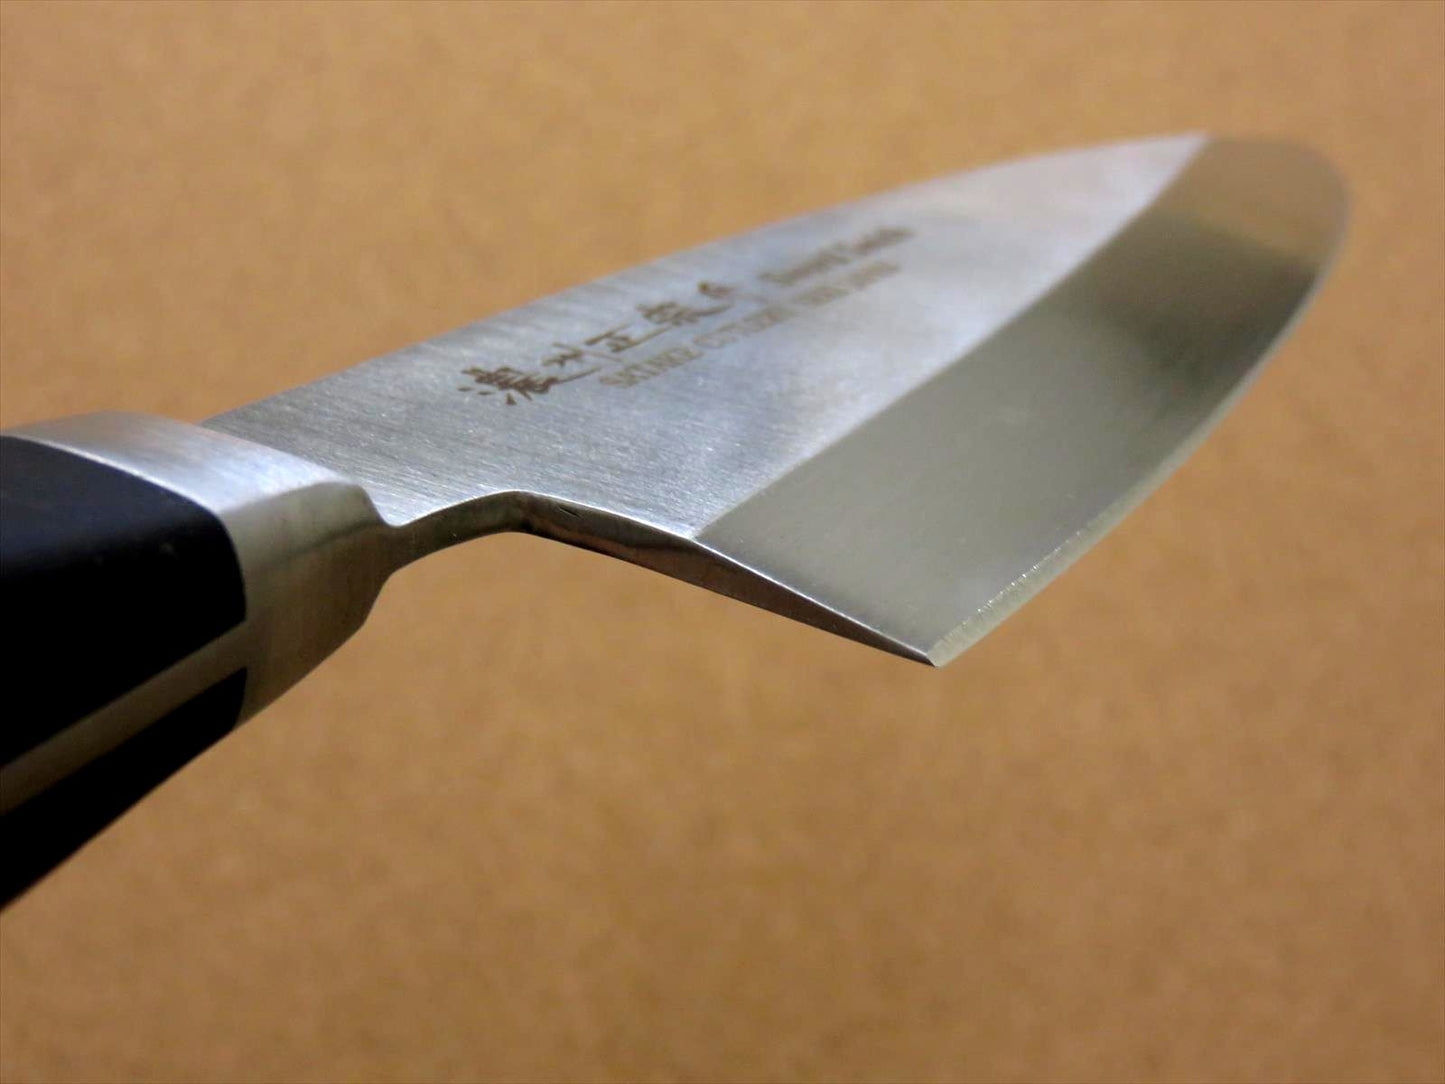 Japanese Masamune Kitchen Deba Knife 165mm 6" ABS resin Right handed SEKI JAPAN